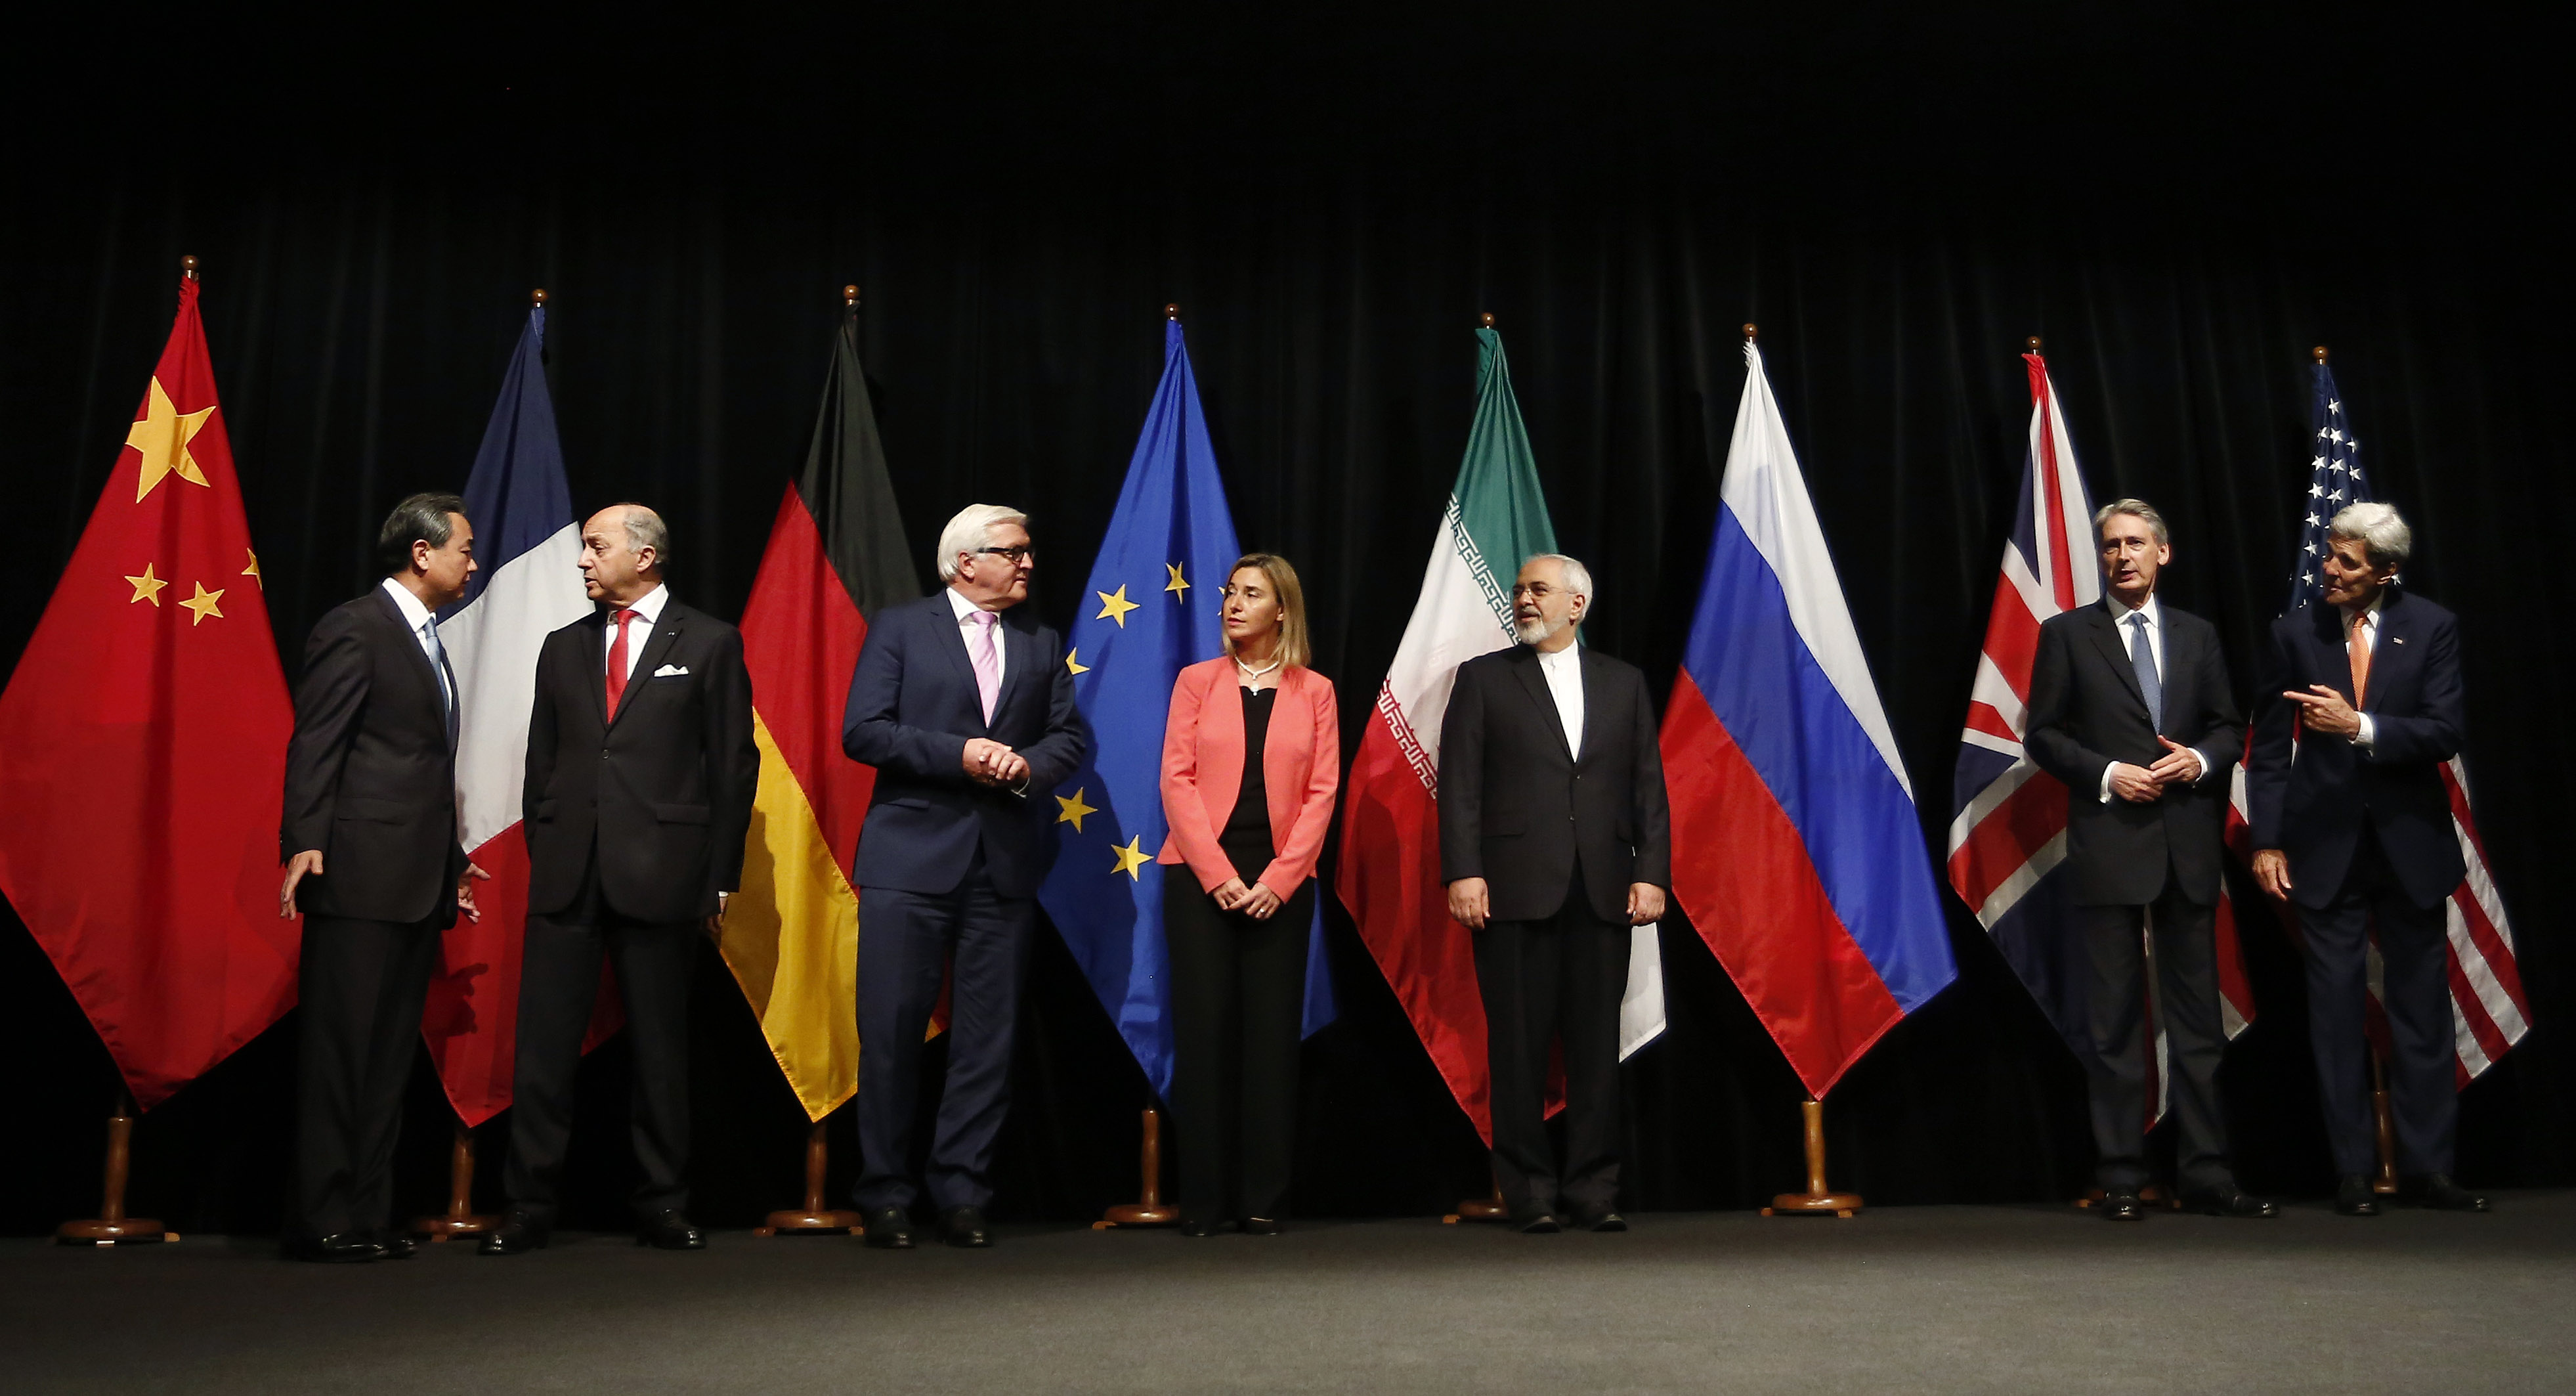 مکانیسم ماشه طرحی راهبردی از سوی اروپا برای فشار به ایران